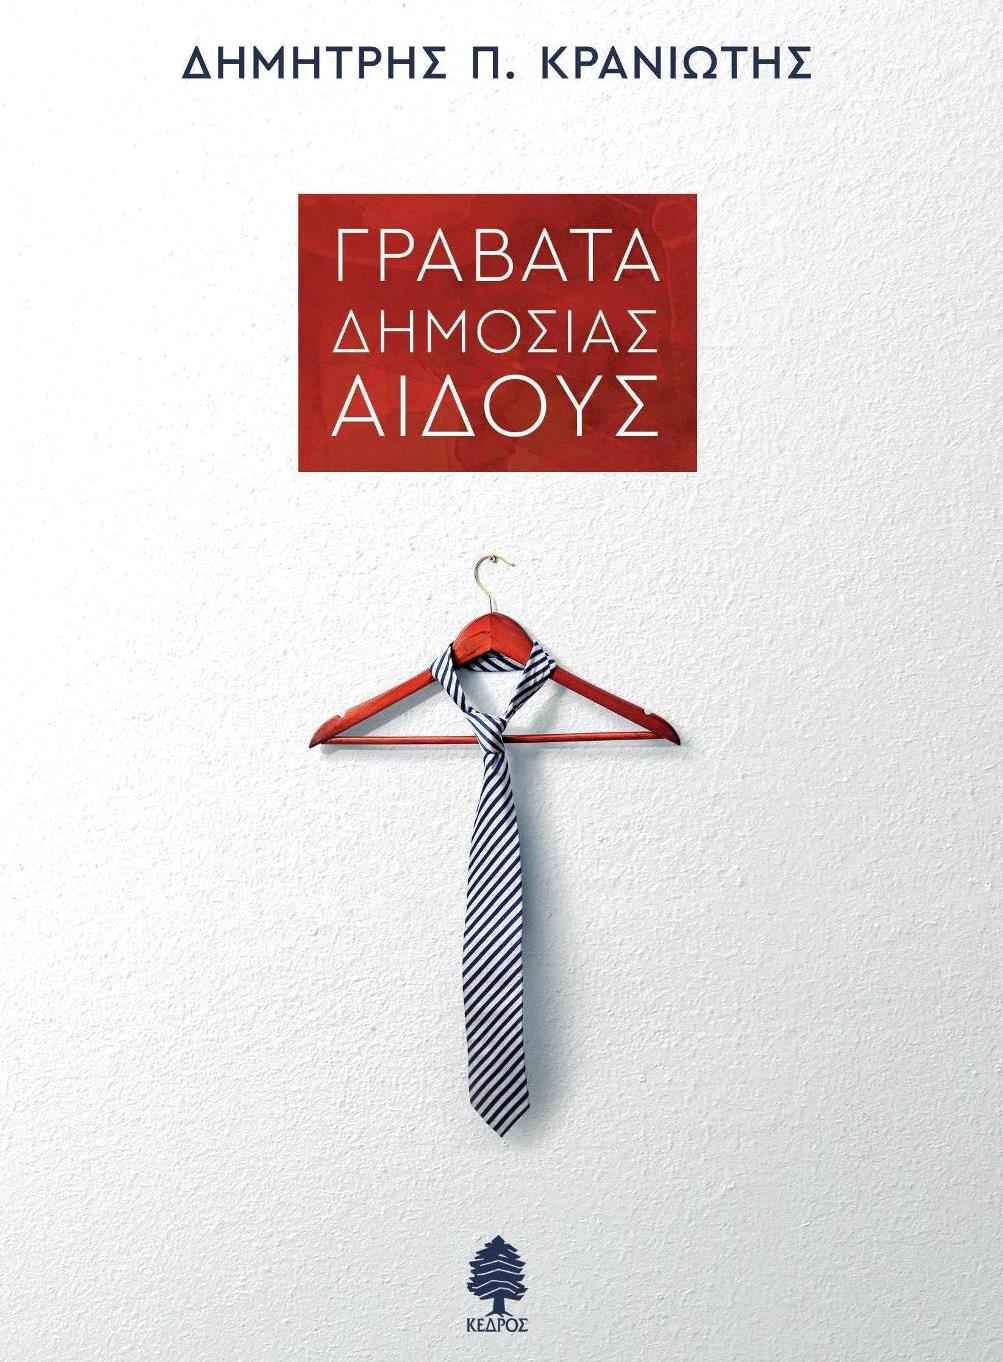 Παρουσίαση στη Θεσσαλονίκη του νέου βιβλίου του Δημήτρη Κρανιώτη